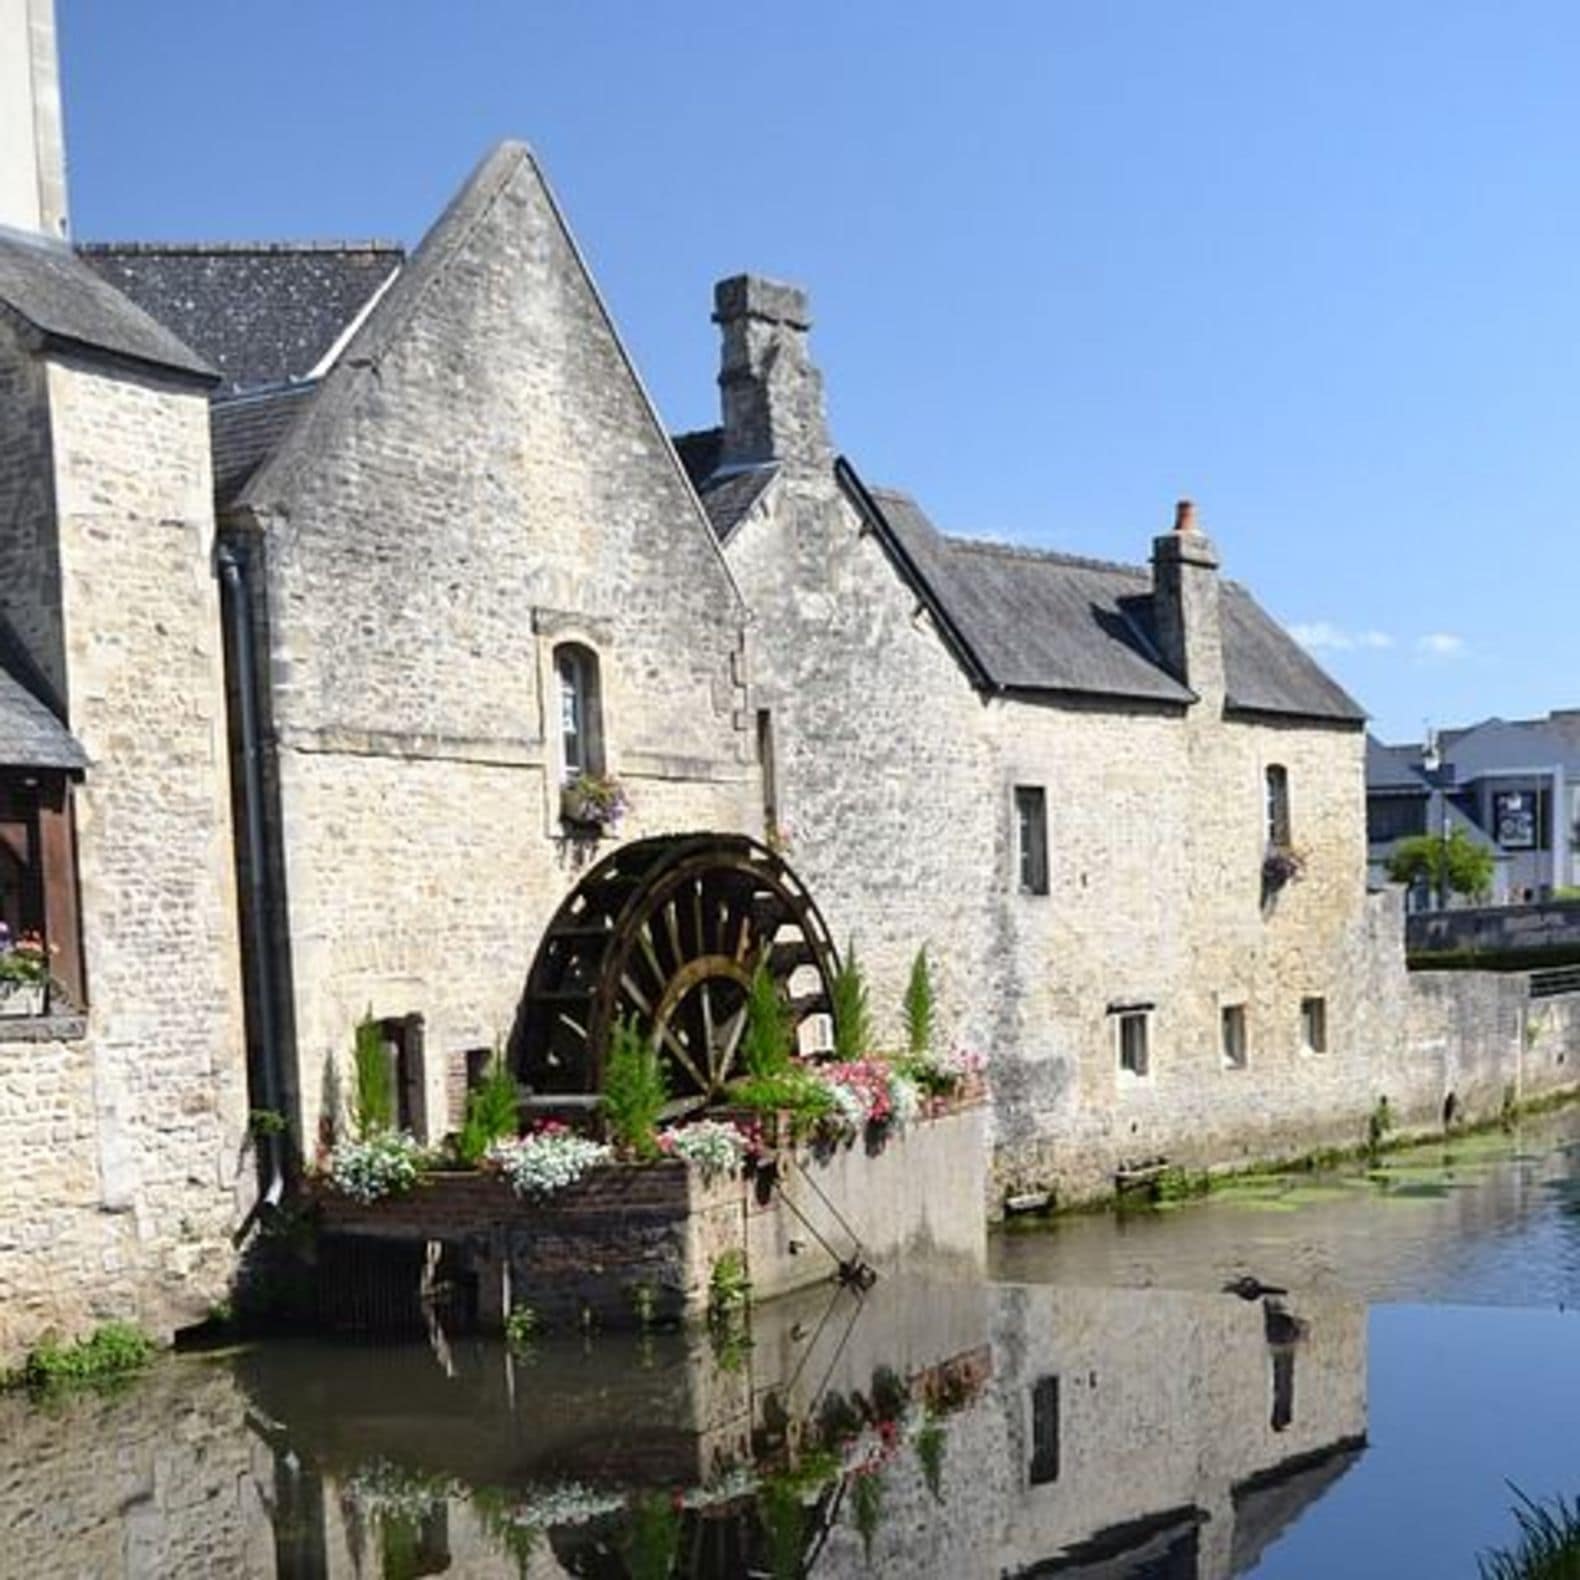 Bayeux, son histoire et son charme à deux pas de chez vous grâce à la location de maison dans le Calvados